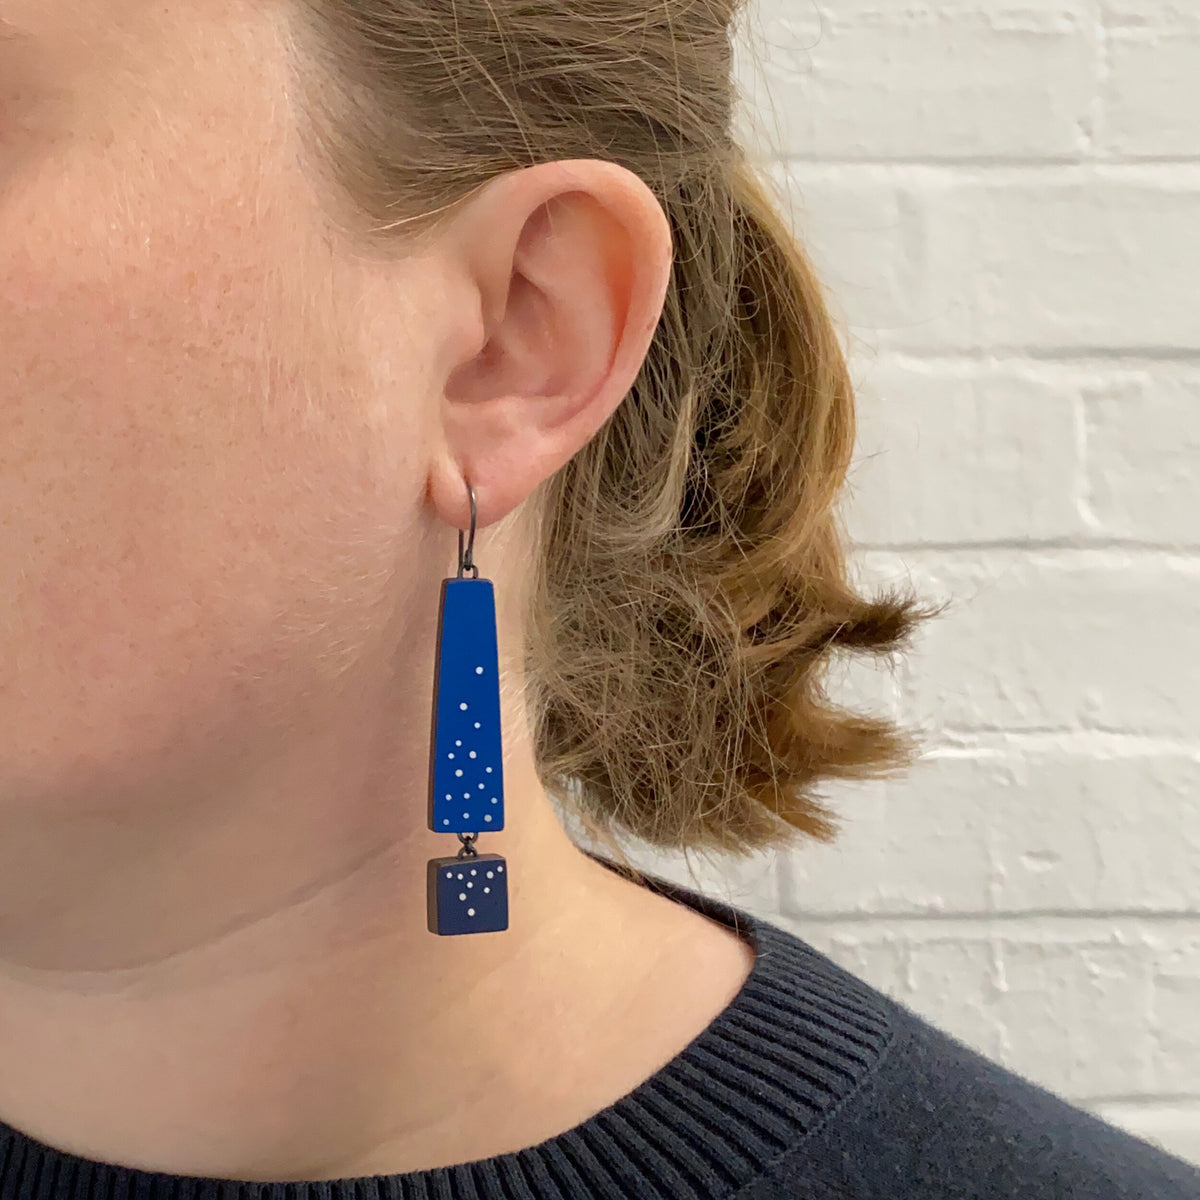 Two blue earrings